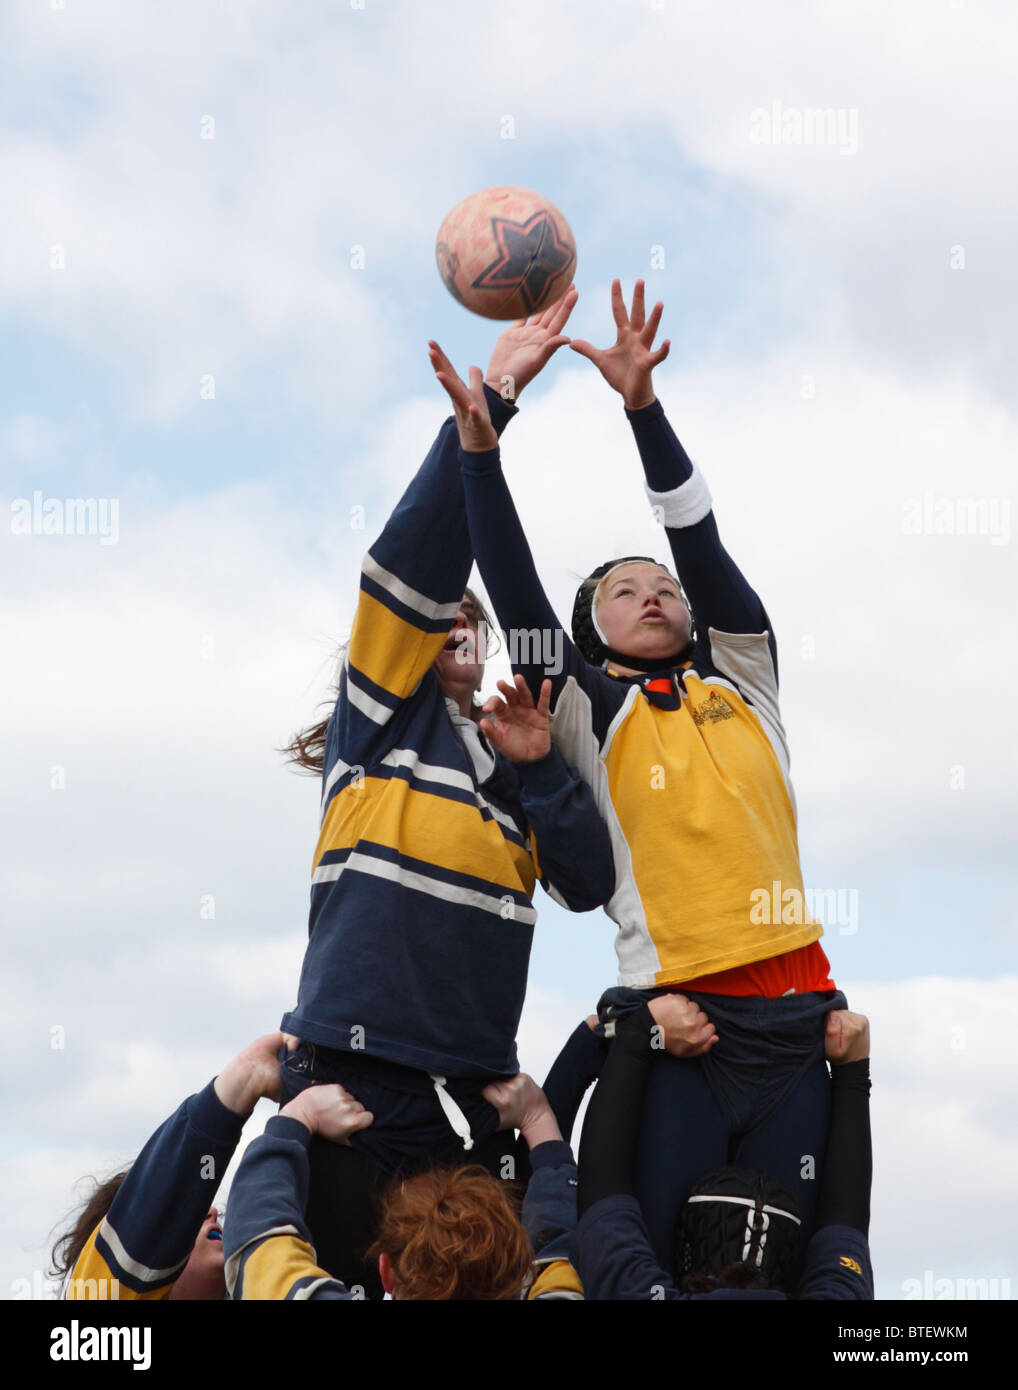 George Washington University Spieler (l) und Marine-Akademie Gegner (R) für den Ball während einer Frauen Rugby-Spiel zu erreichen. Stockfoto